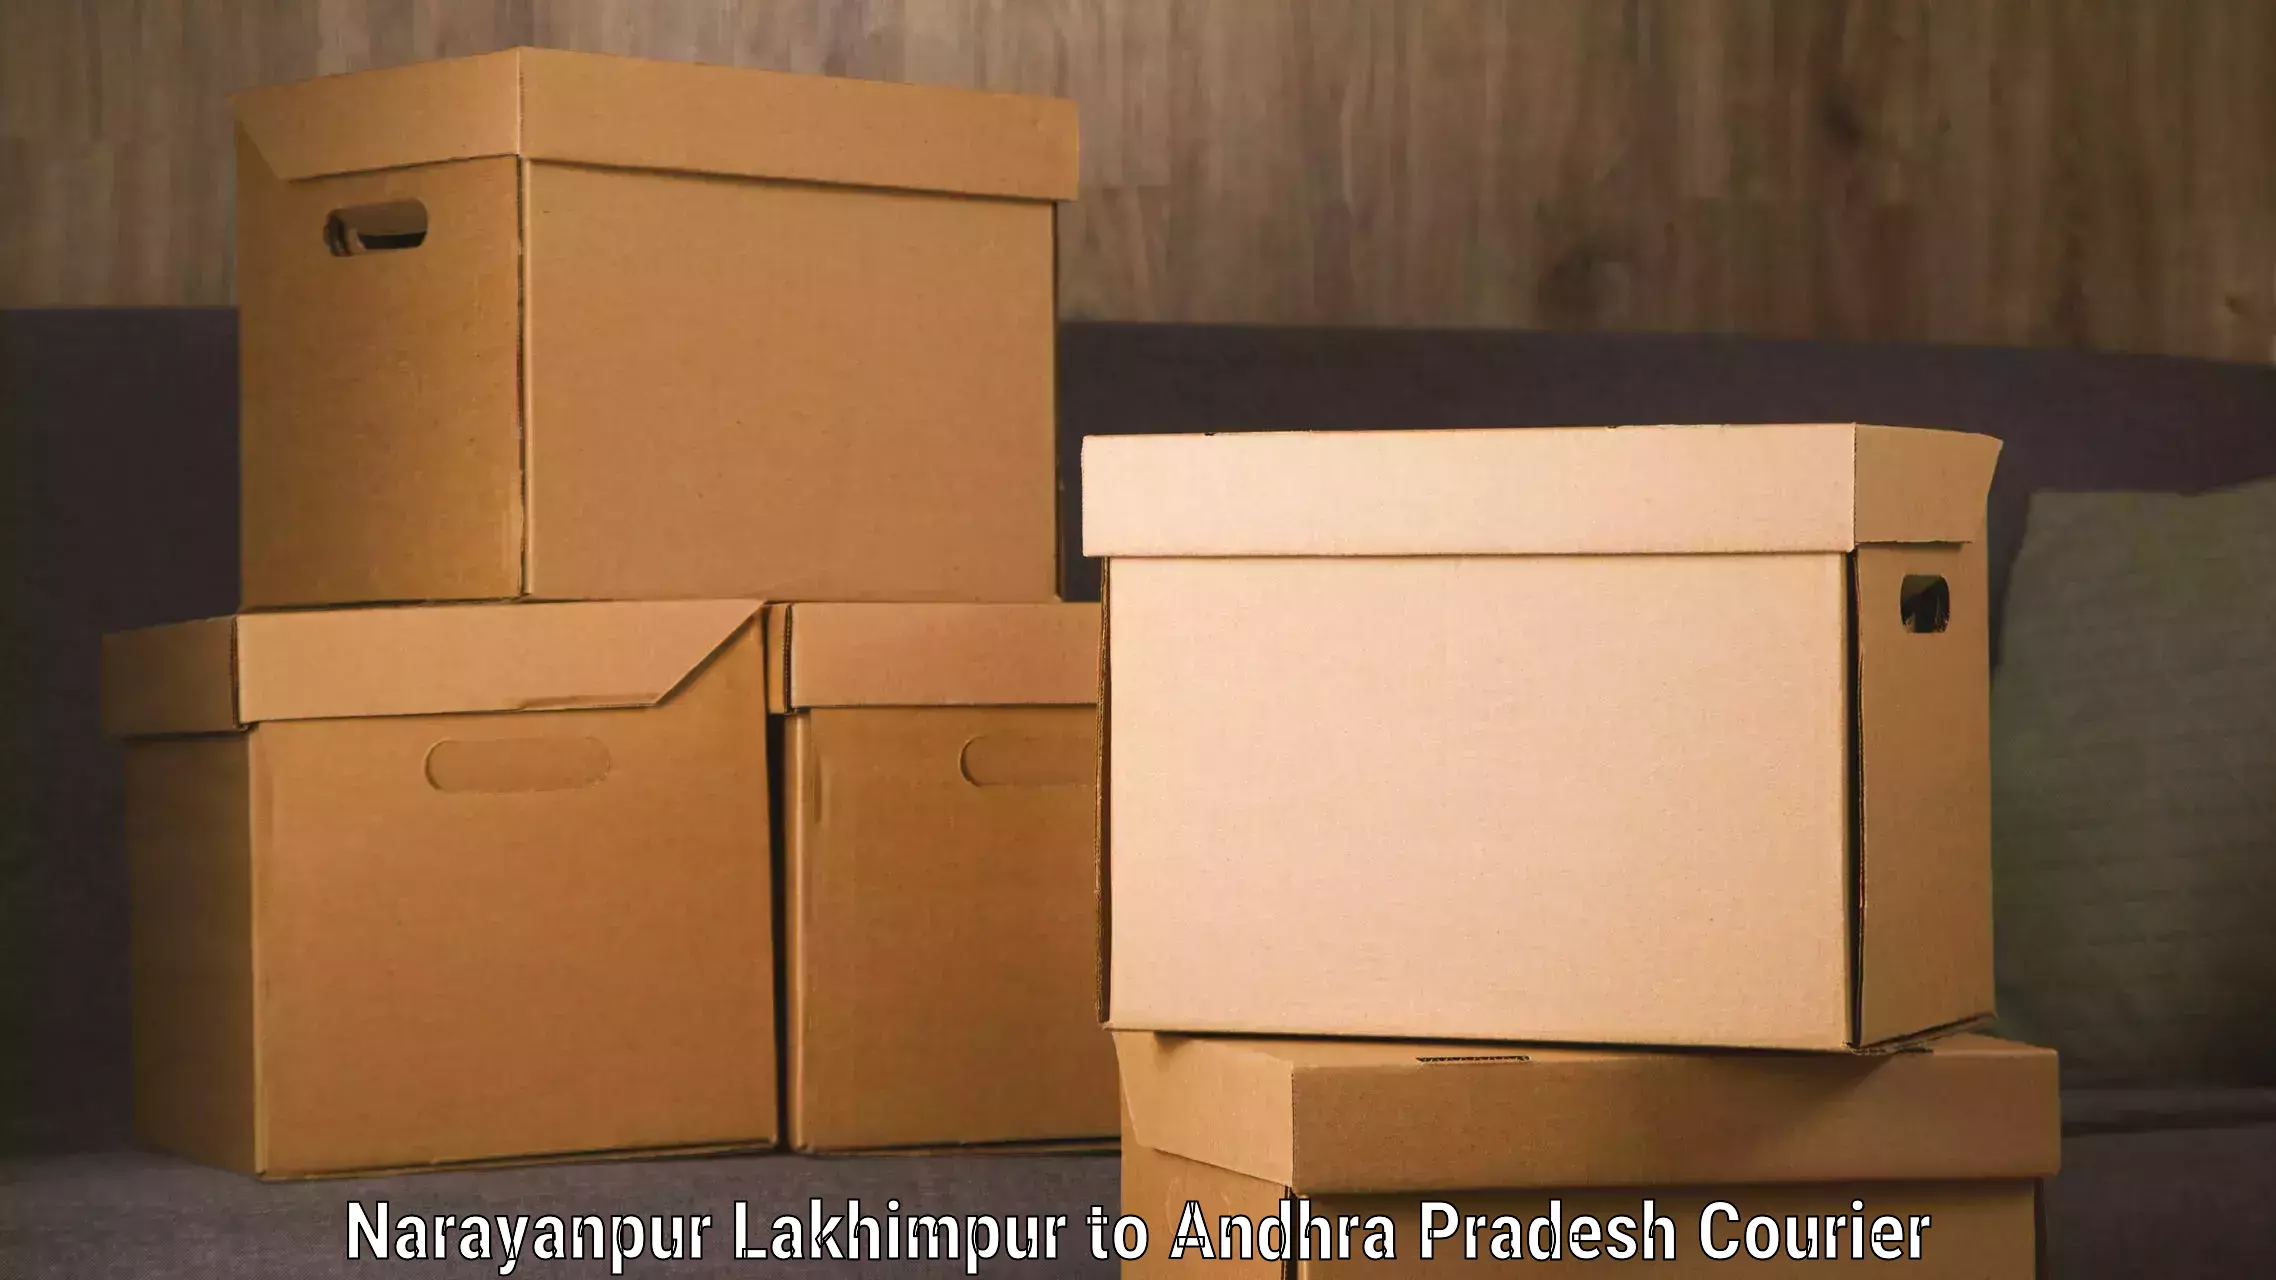 Luggage transport schedule Narayanpur Lakhimpur to Vijayawada